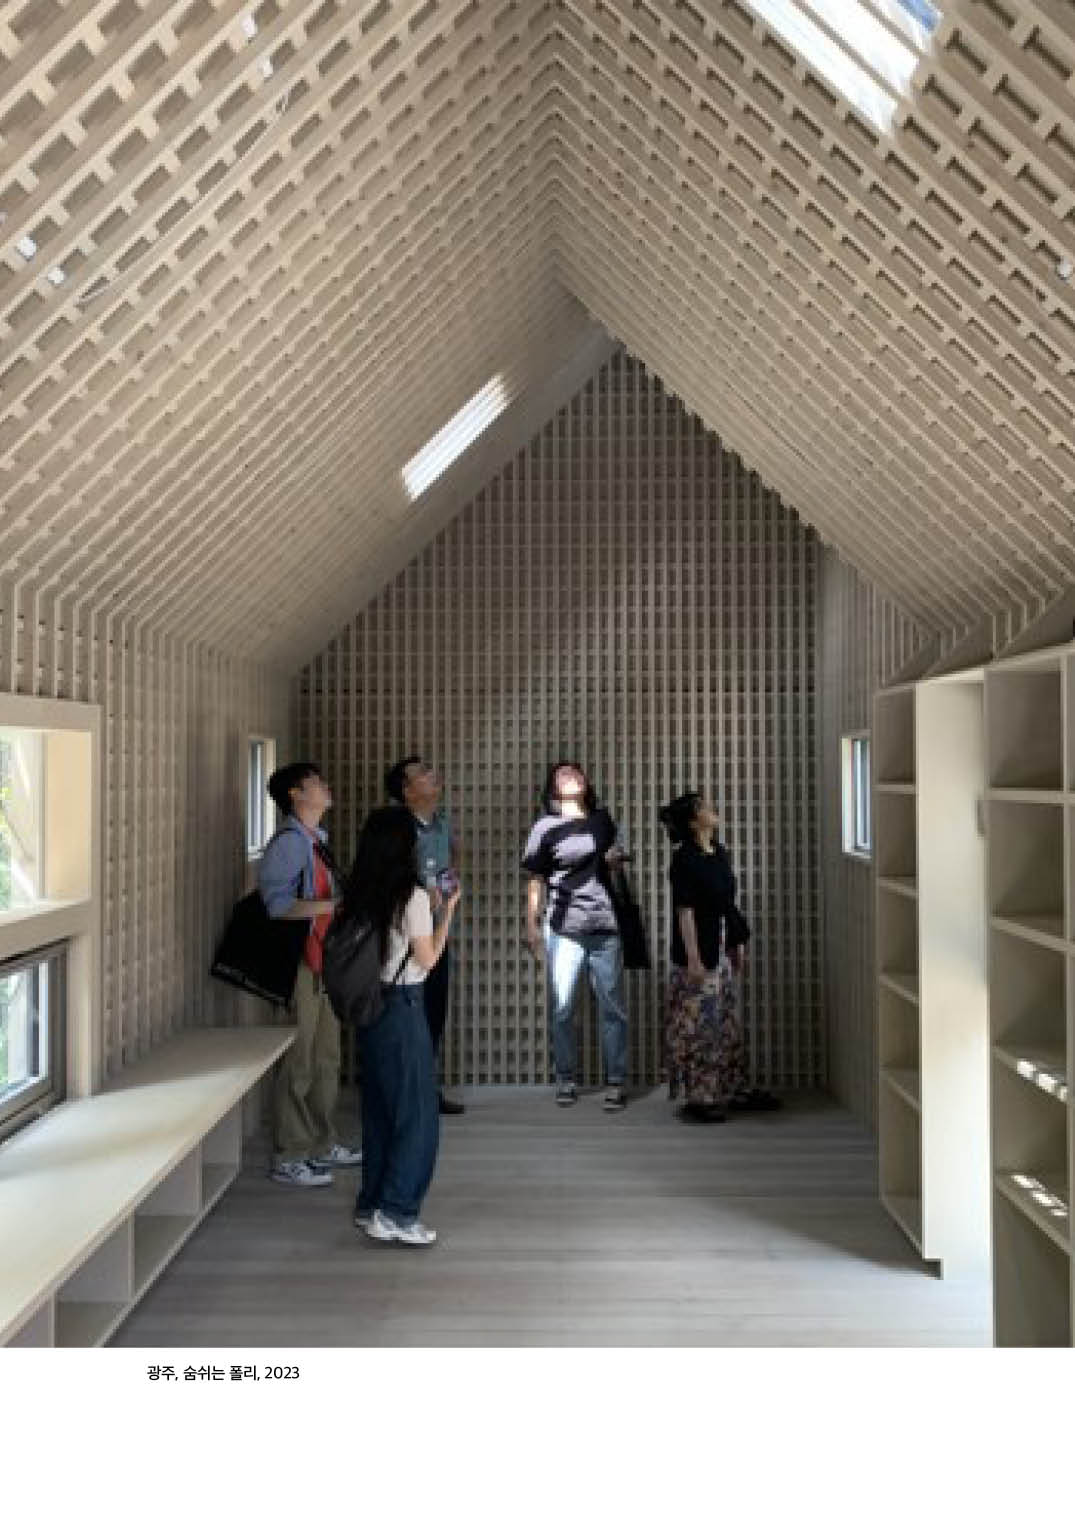 [한옥건축교실 2강 웹진] 신한옥 2.0, 미래한옥의 진화적 방향 - 조남호

광주, 숨쉬는 폴리, 2023

